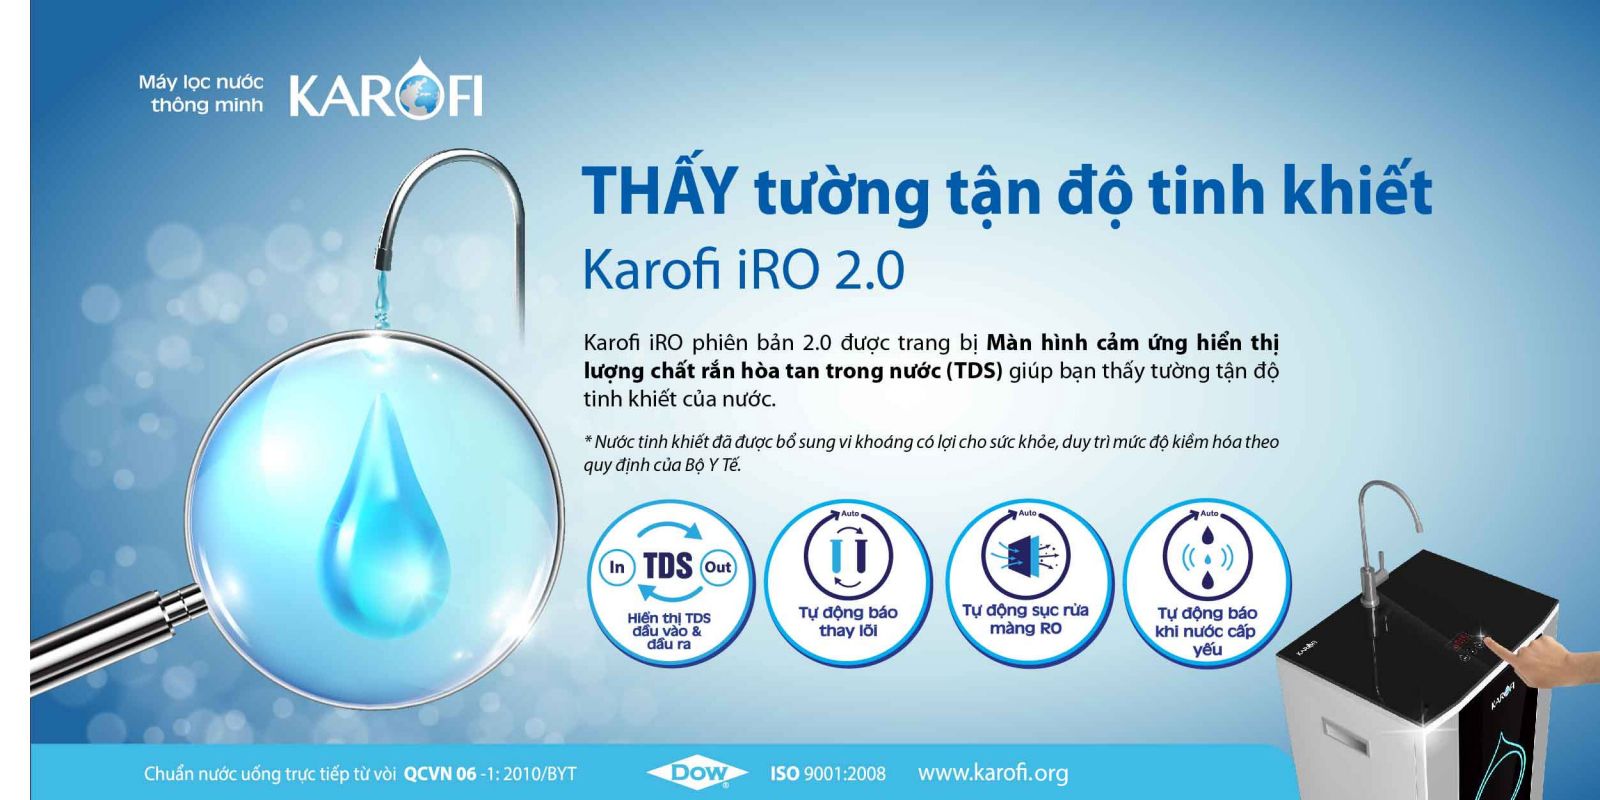 Máy lọc nước Karofi IRO 2.0 6 cấp